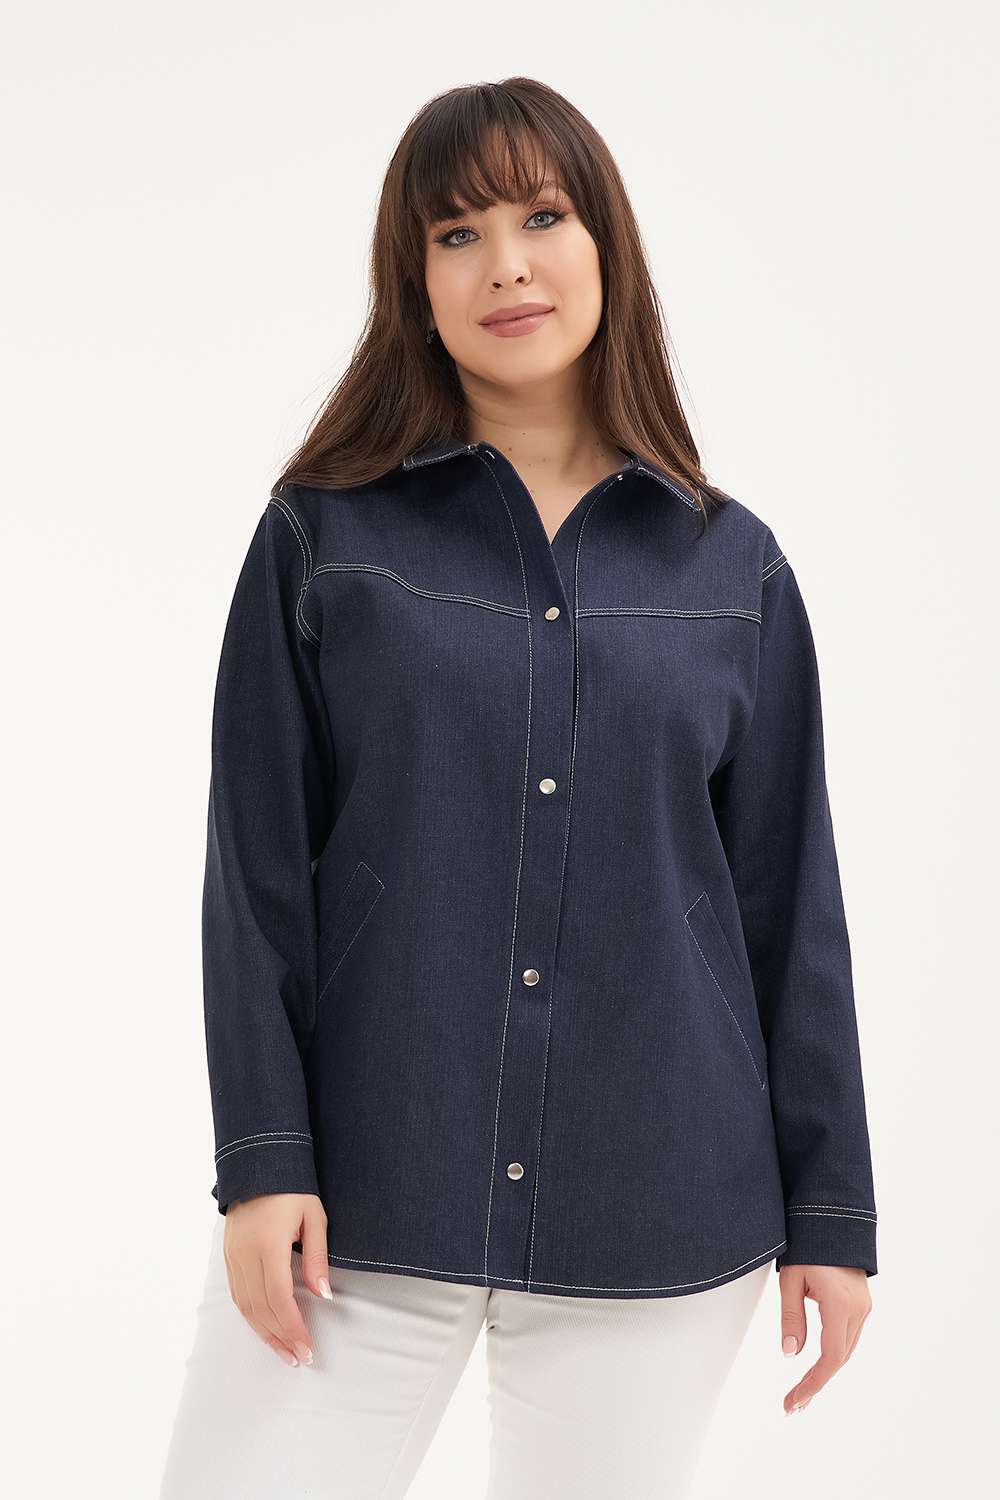 Рубашка женская OLSI 2317001 синяя 60 RU